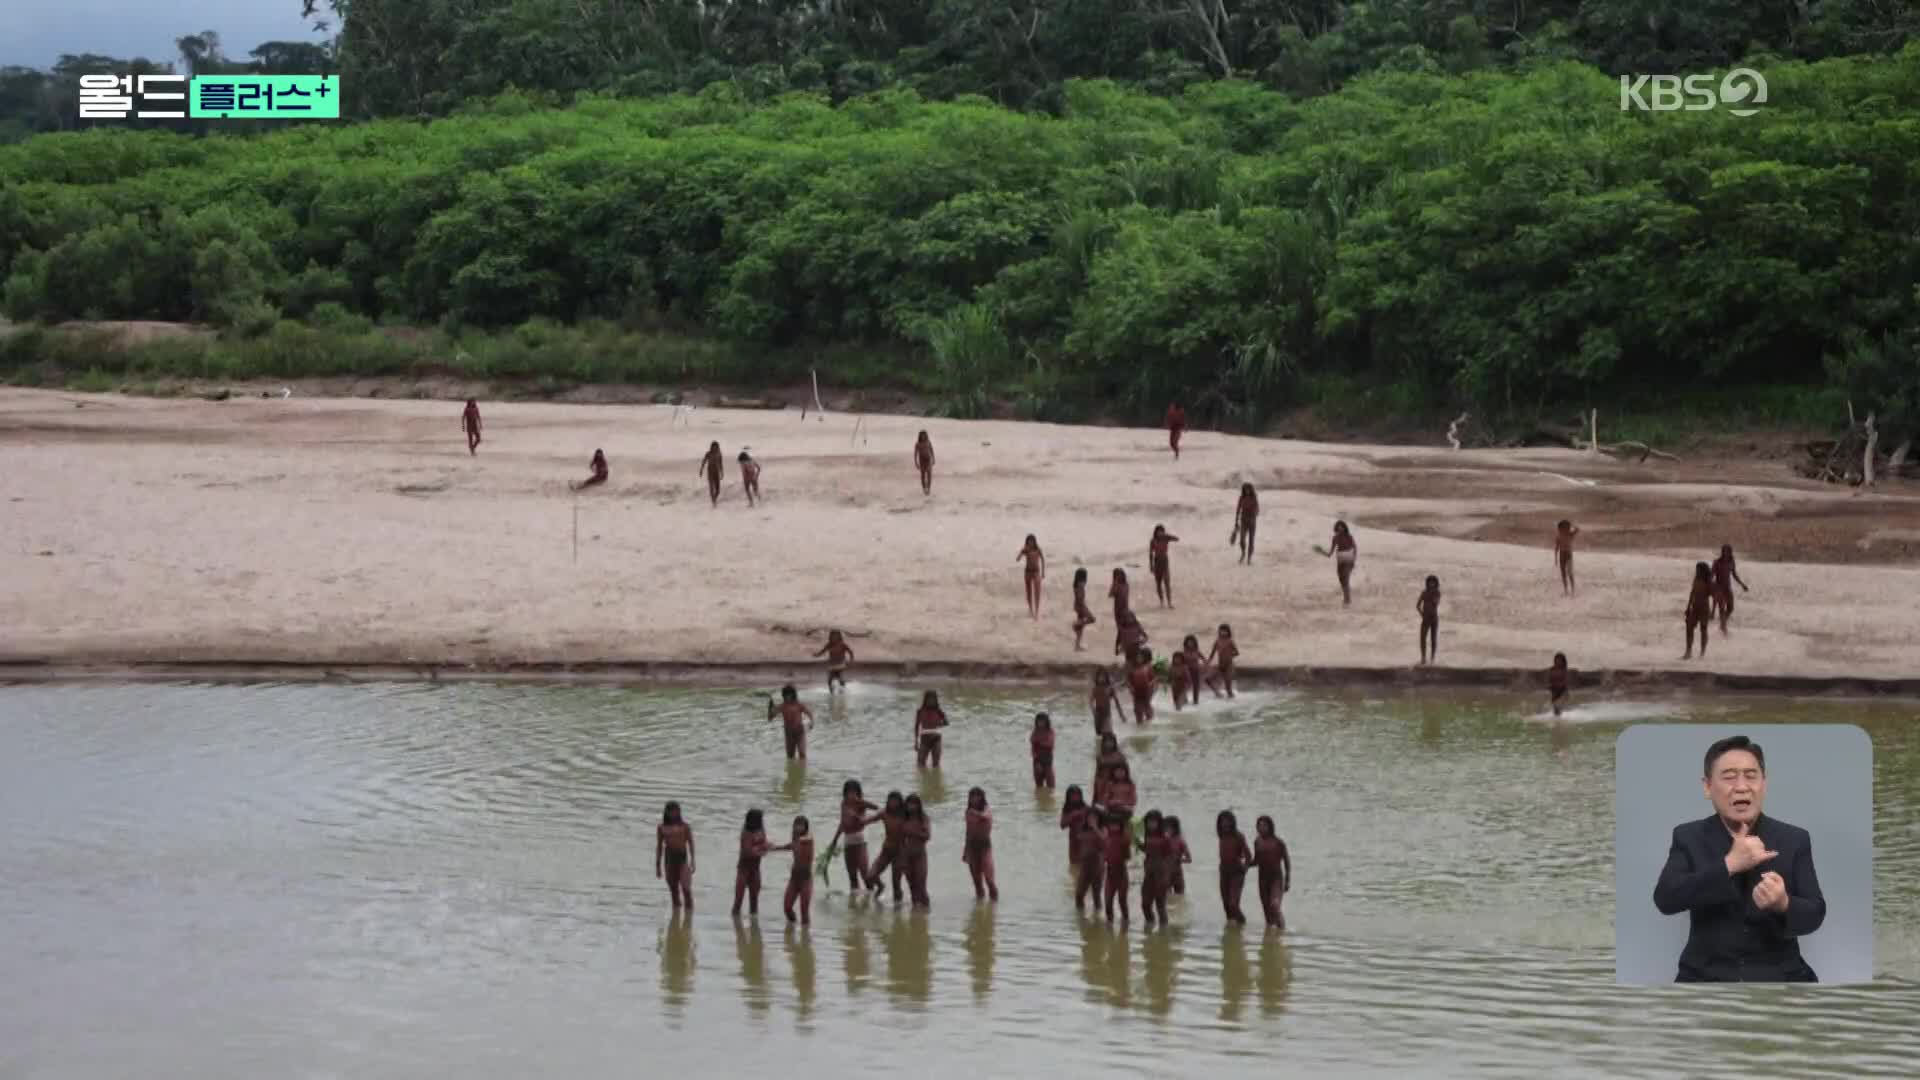 [월드 플러스] 페루 아마존의 ‘문명 미접촉 부족’ 모습 포착…영상 공개돼